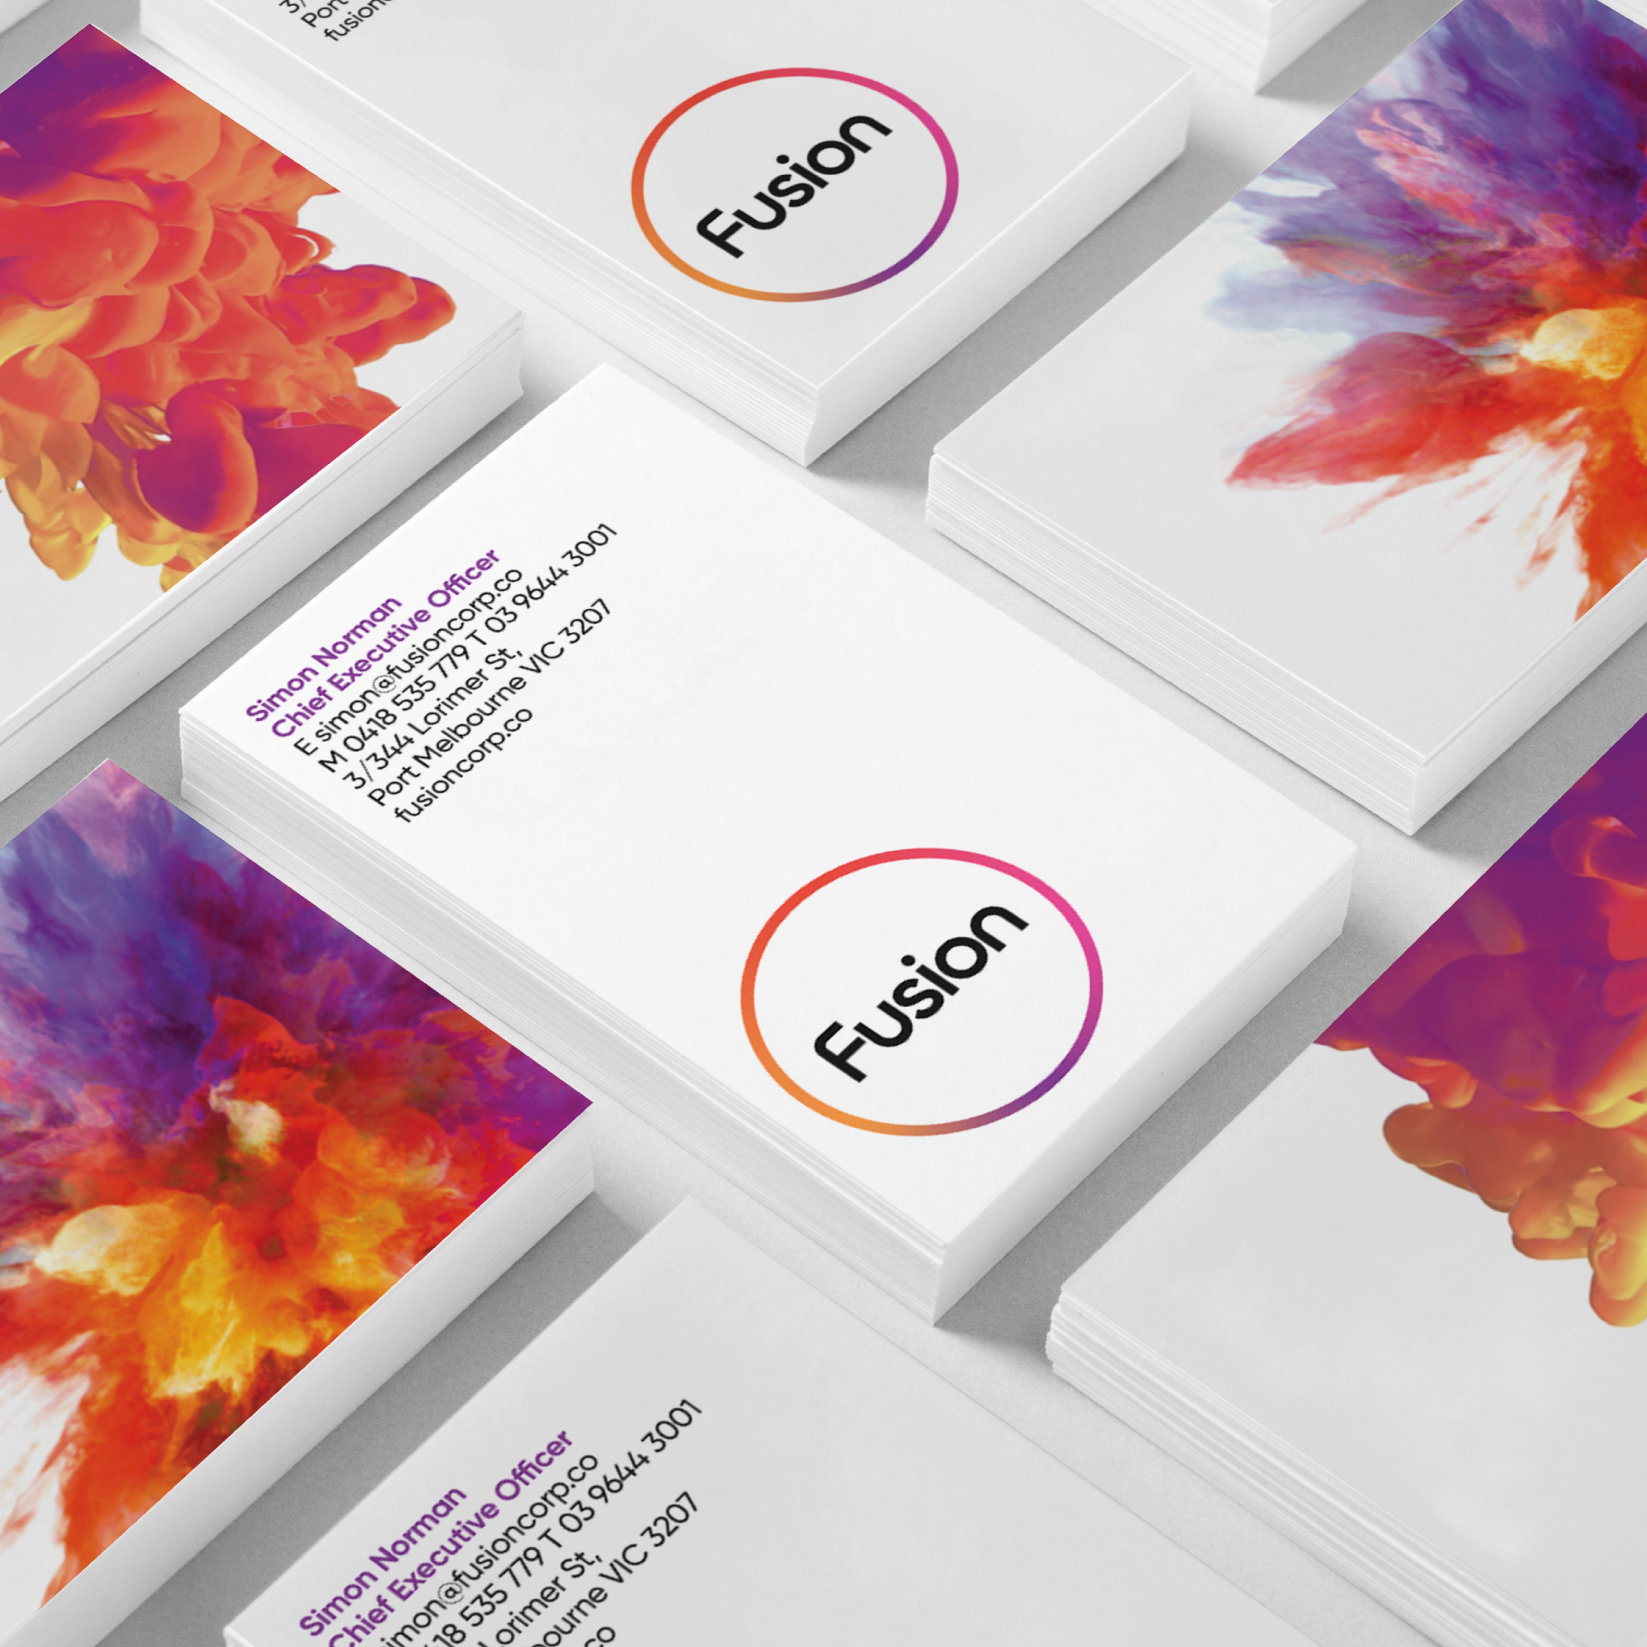 Fusion Rebrand - Business Card Design